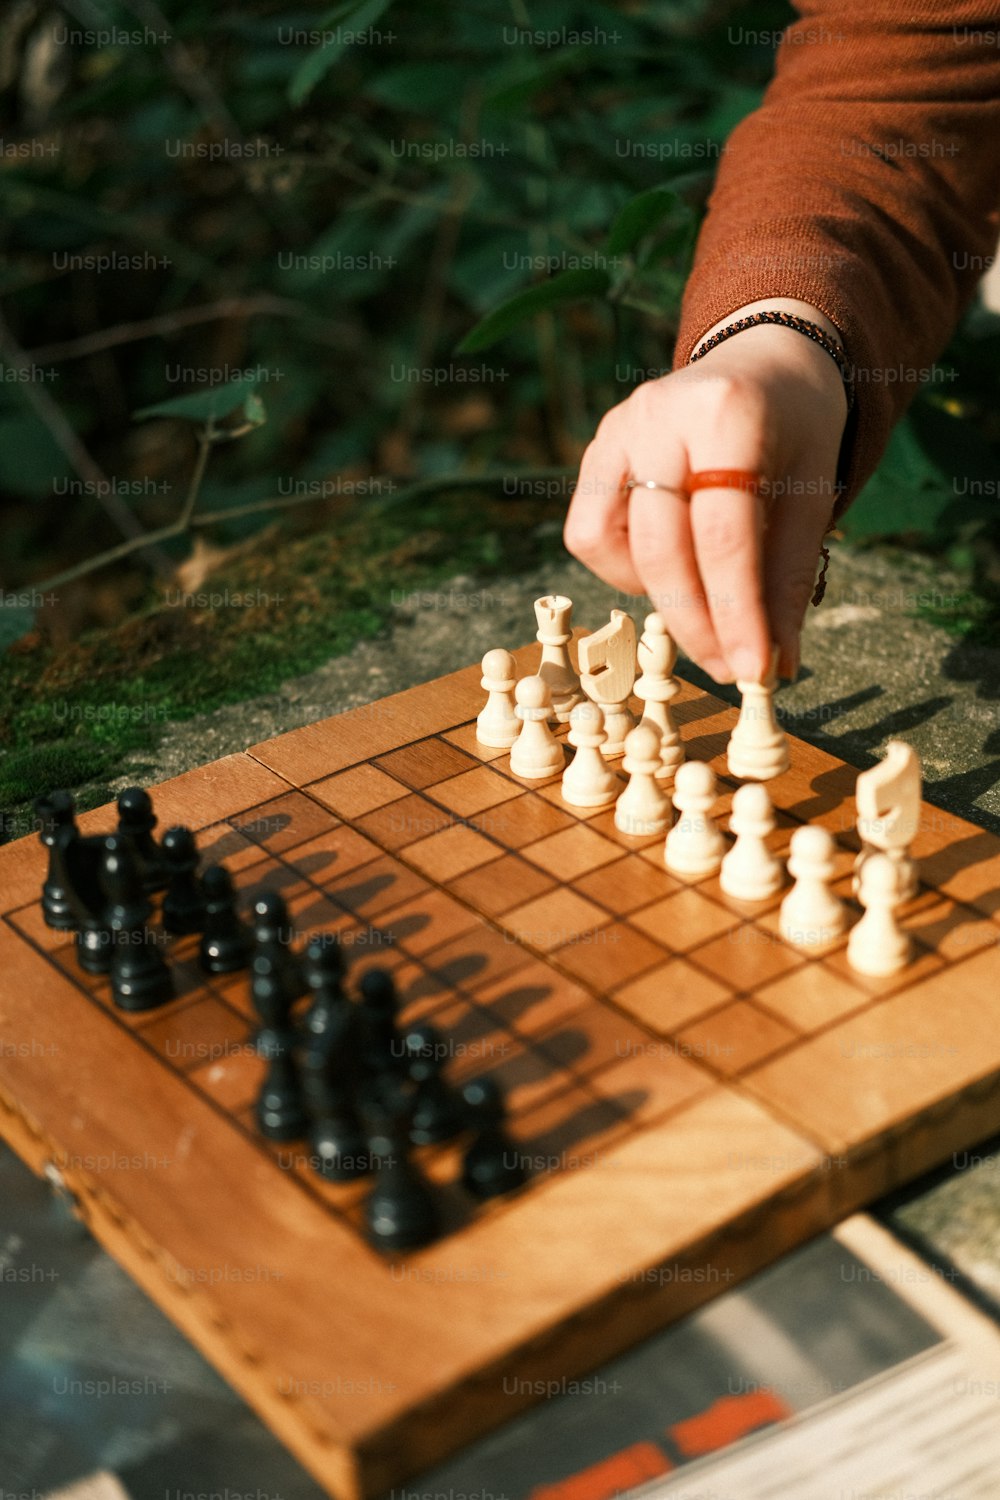 Una persona está jugando una partida de ajedrez